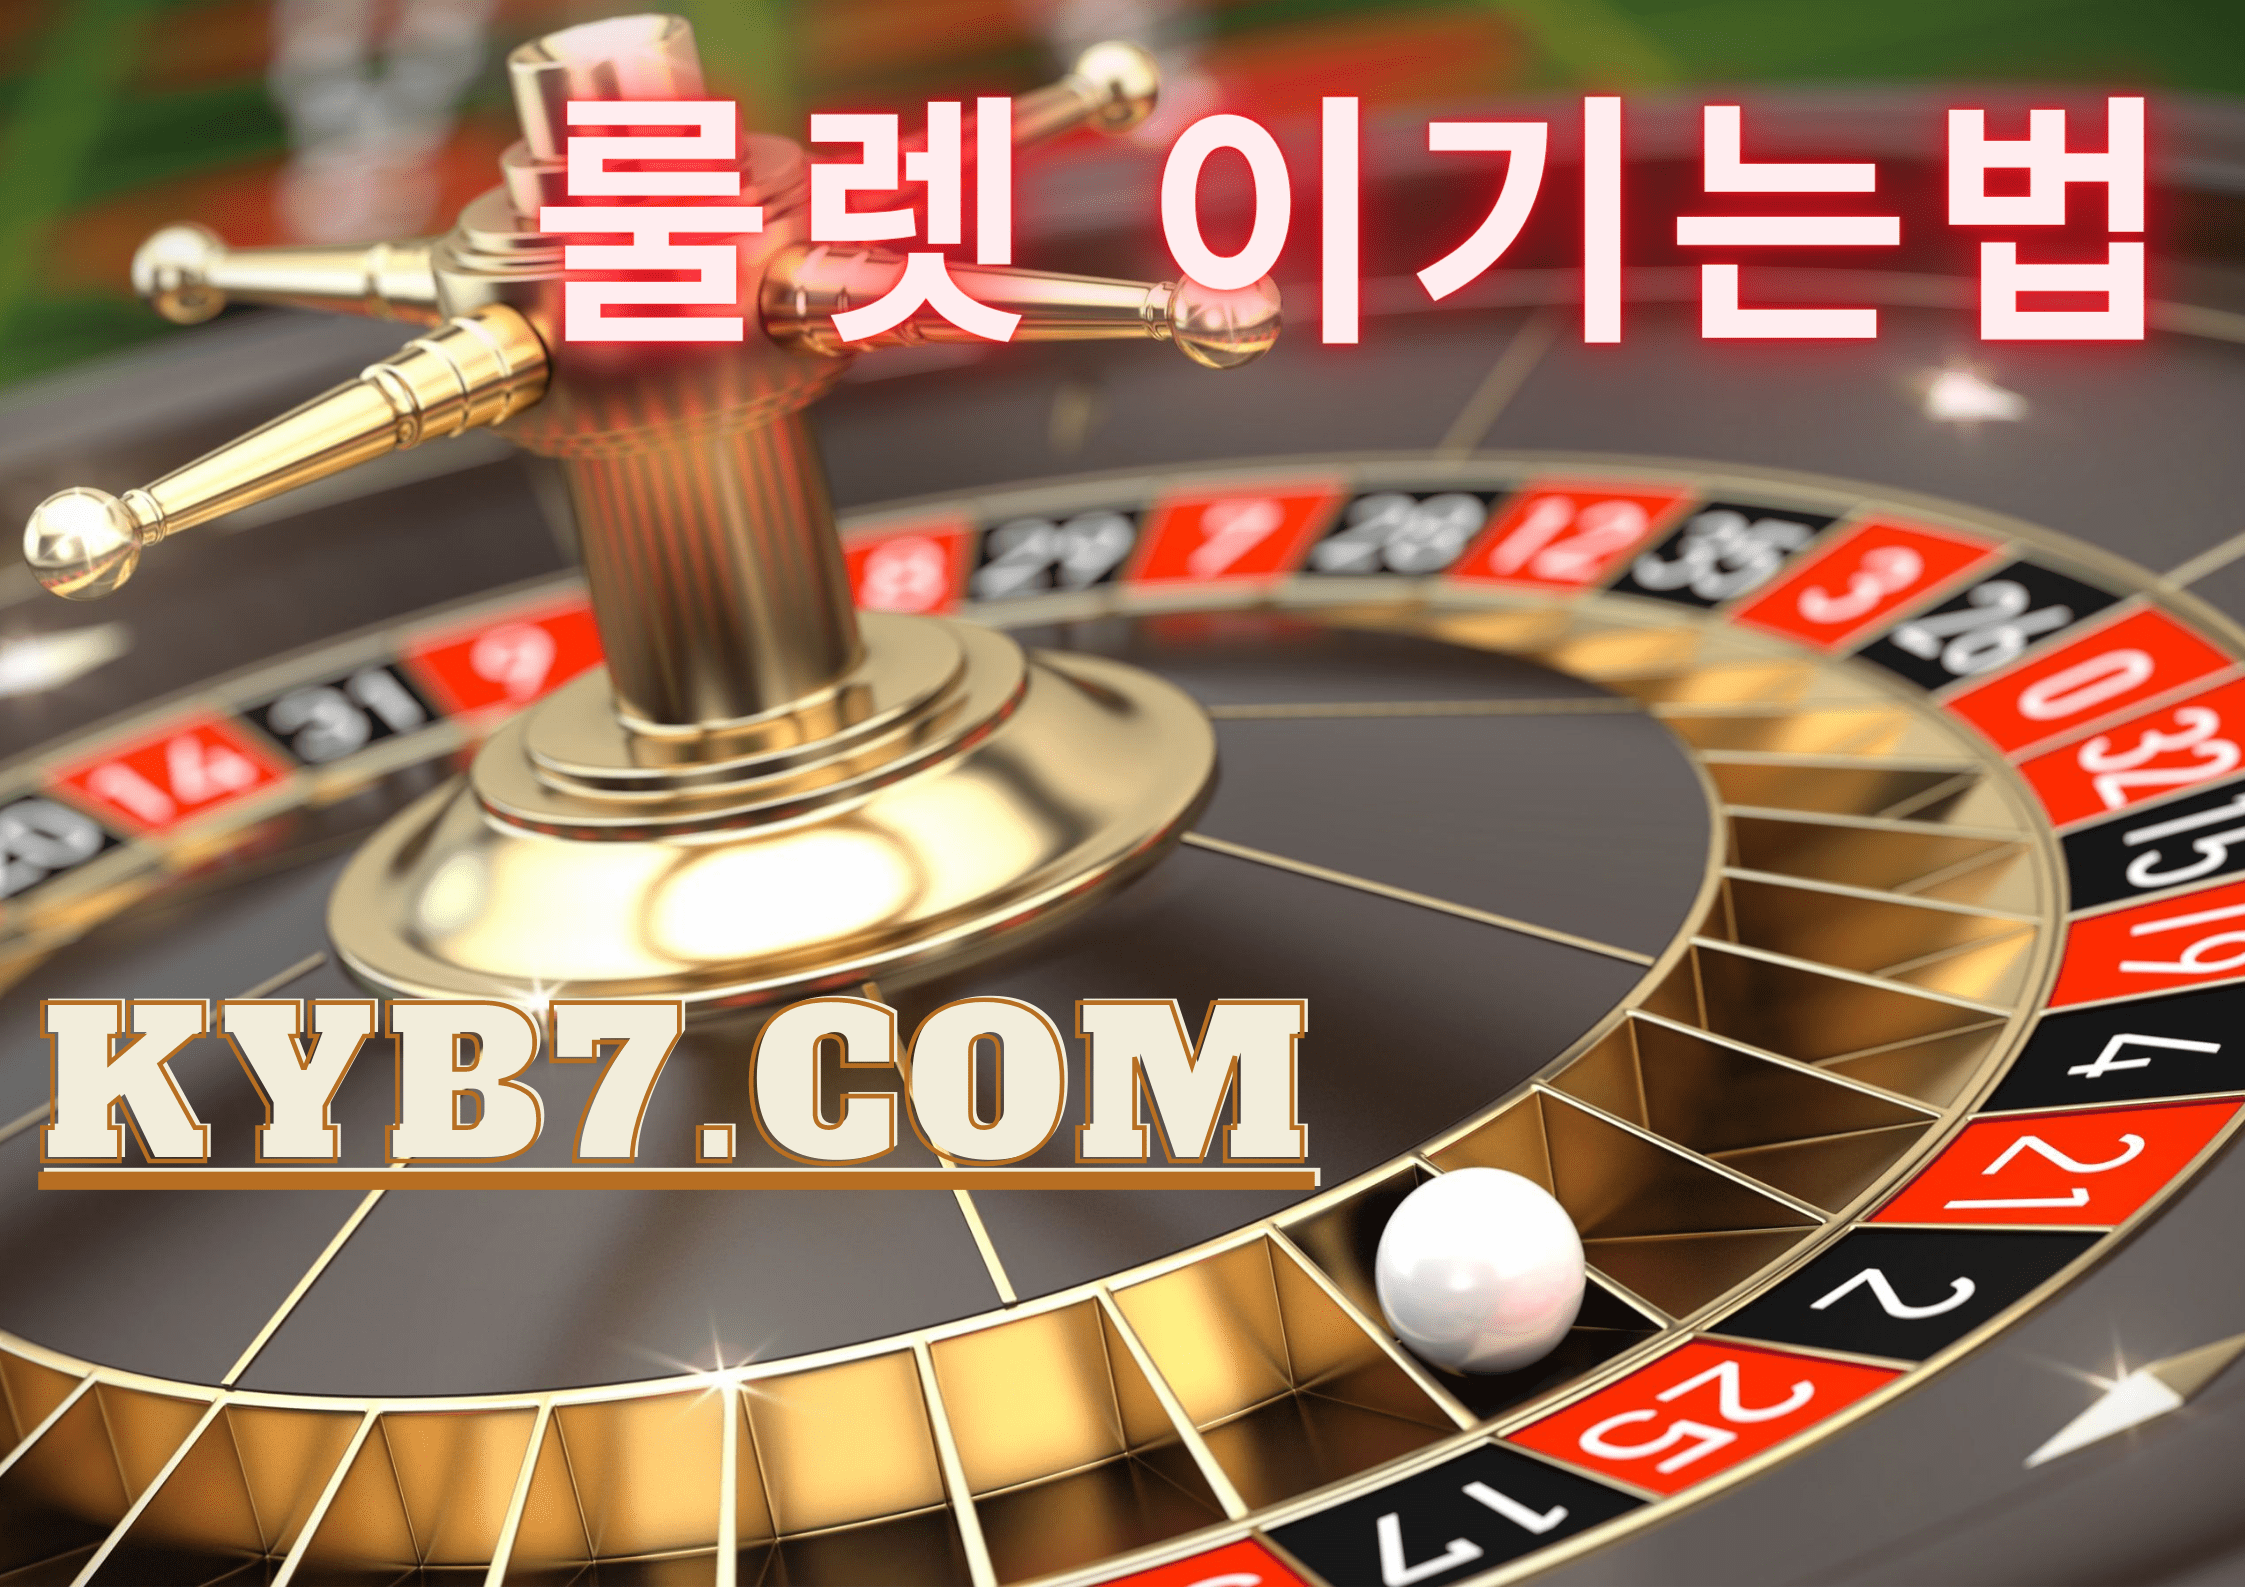 mas75.com-superior casino-roulettes